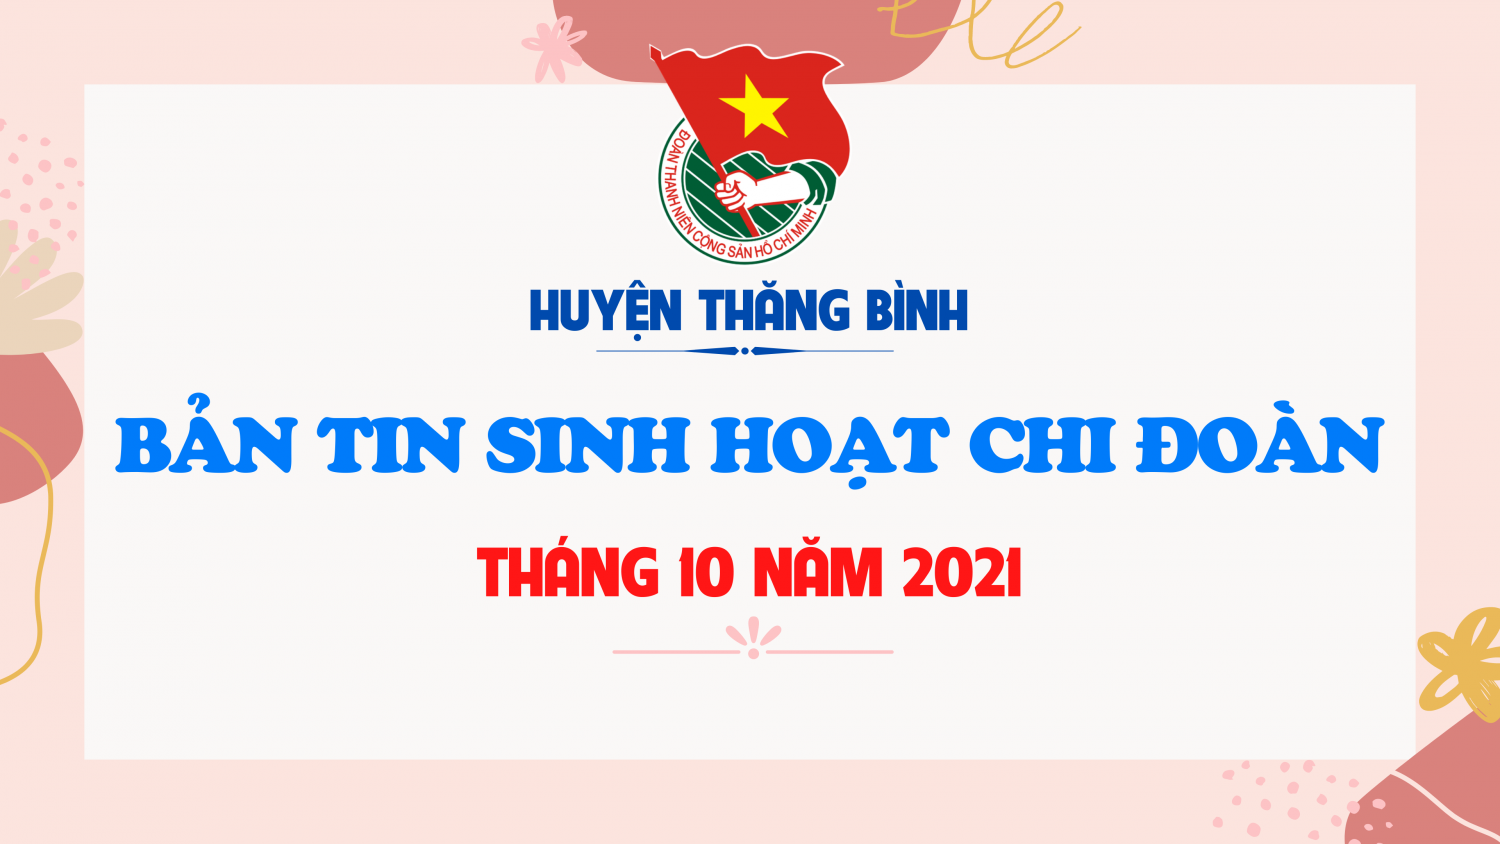 BẢN TIN SINH HOẠT CHI ĐOÀN THÁNG 10 NĂM 2021